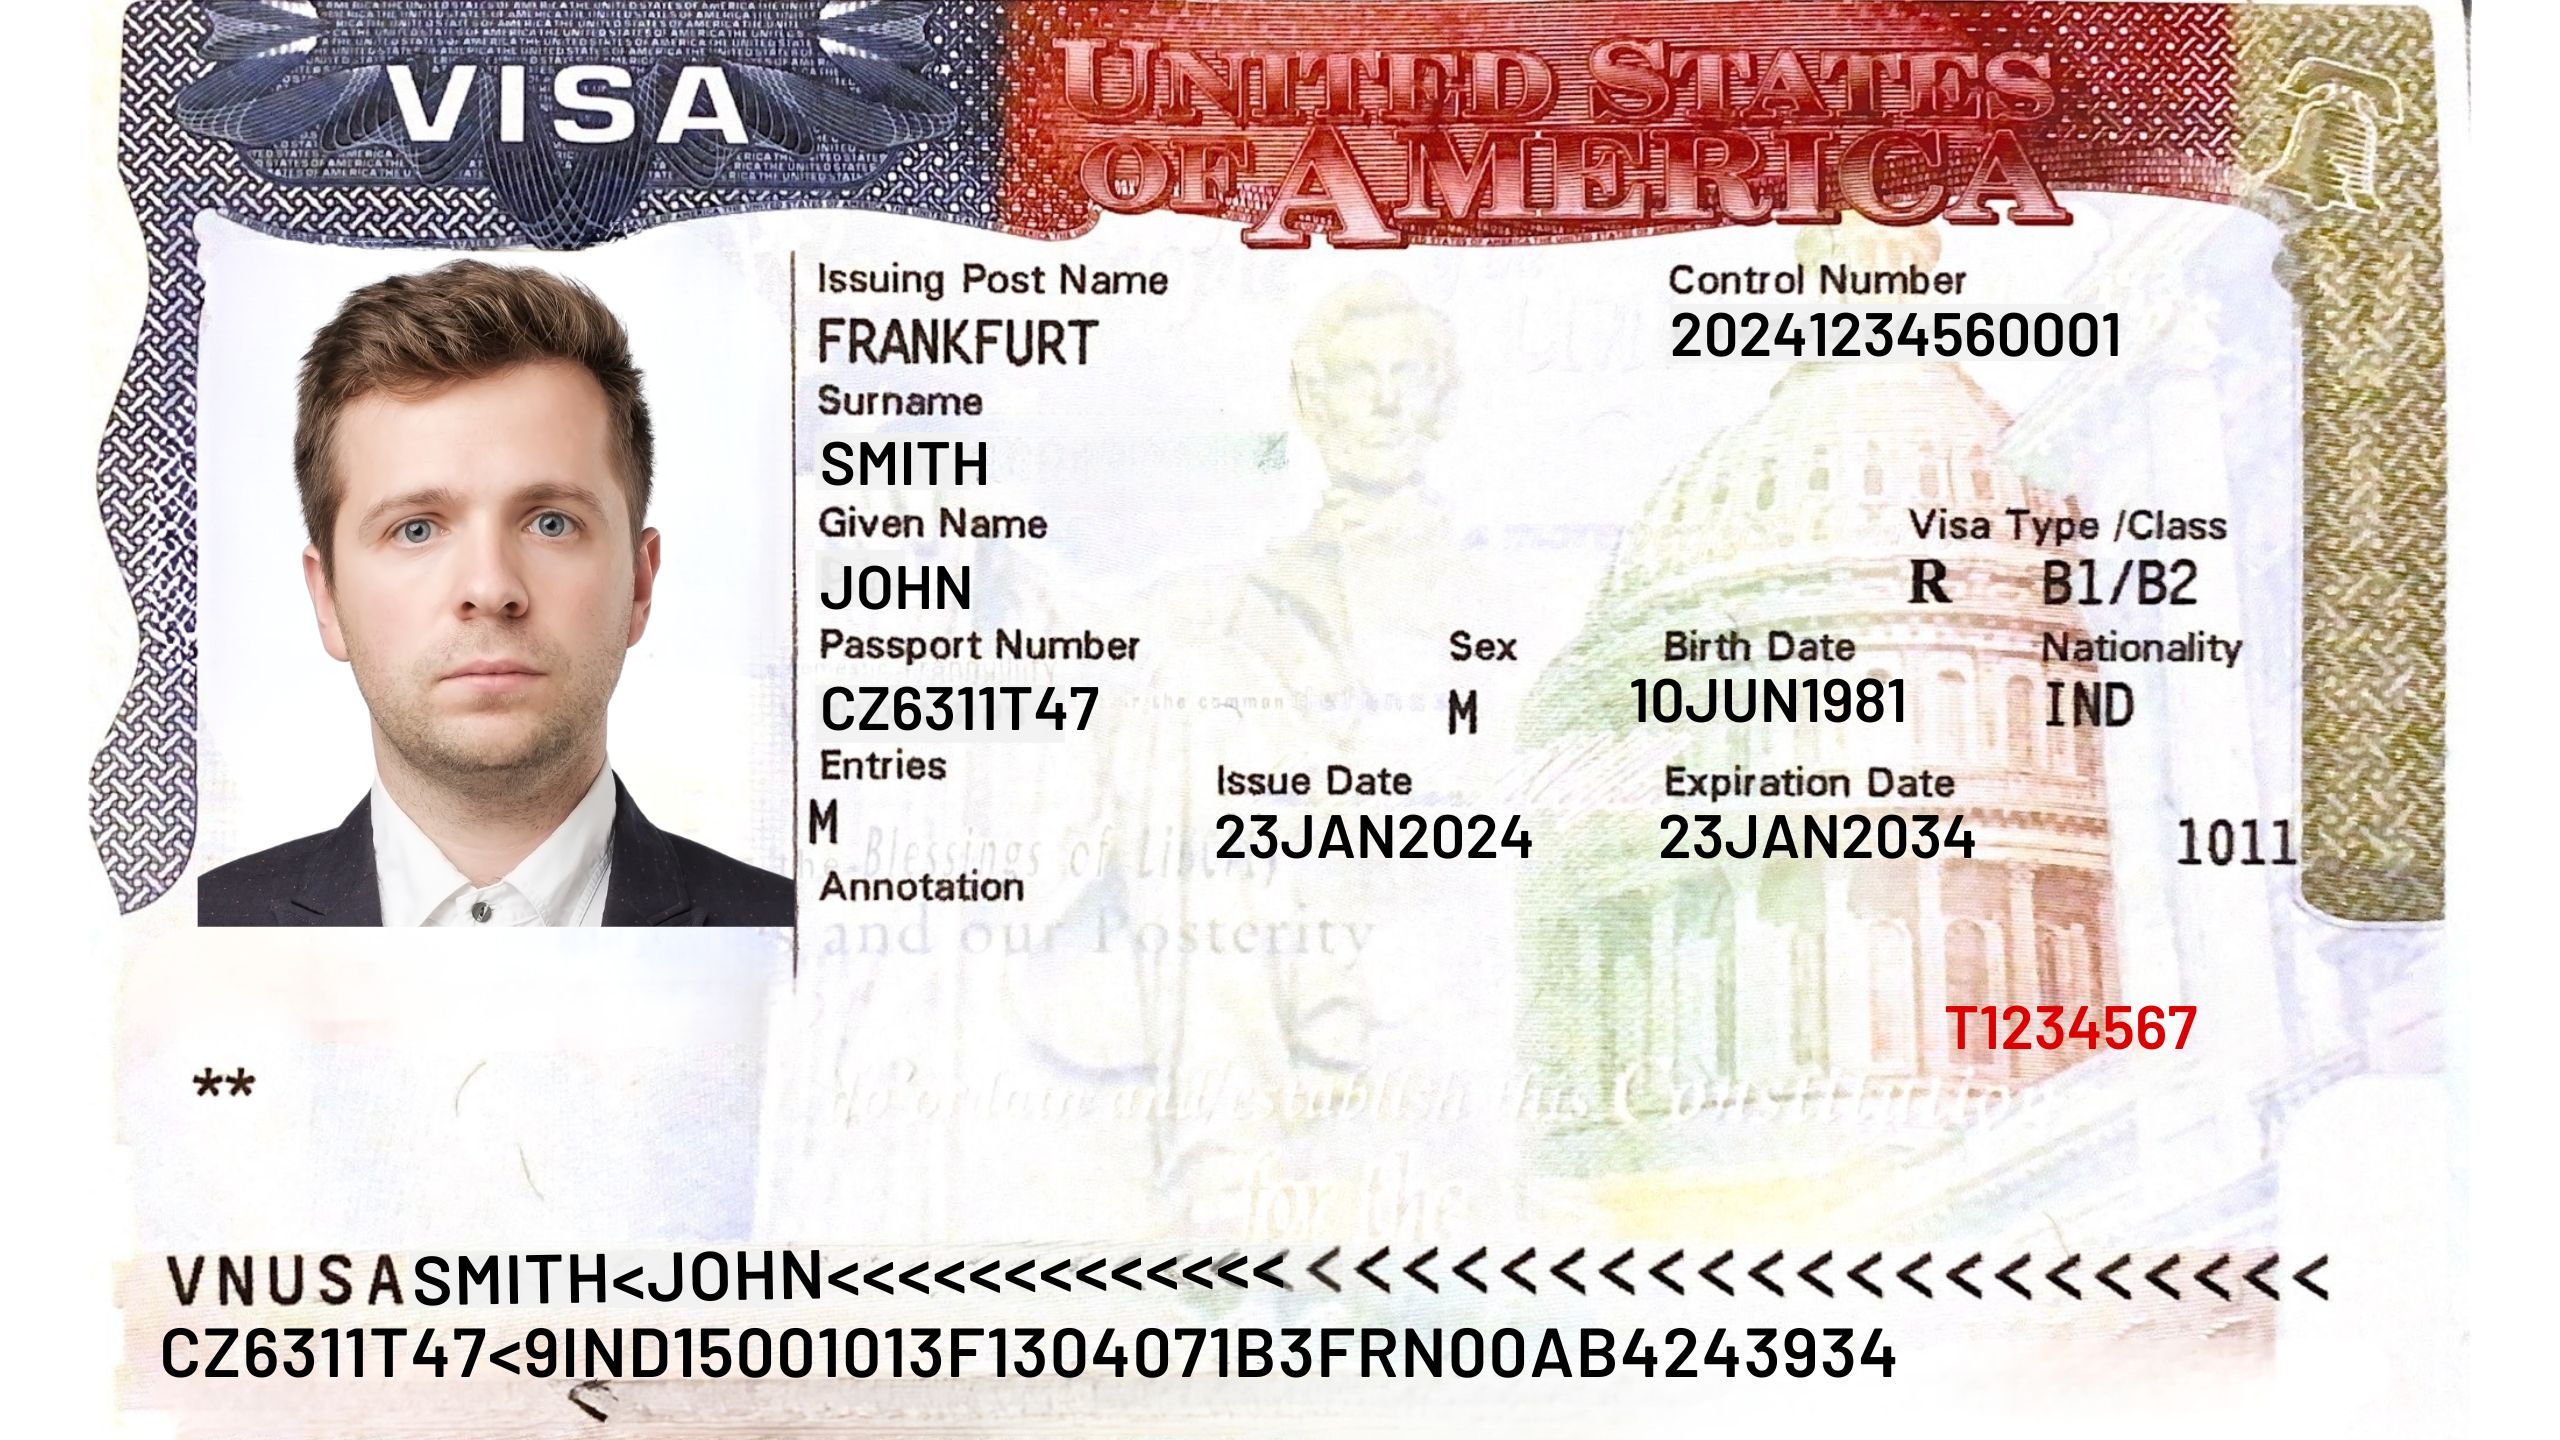 Bild von einem B-1 / B-2 Visum für die USA